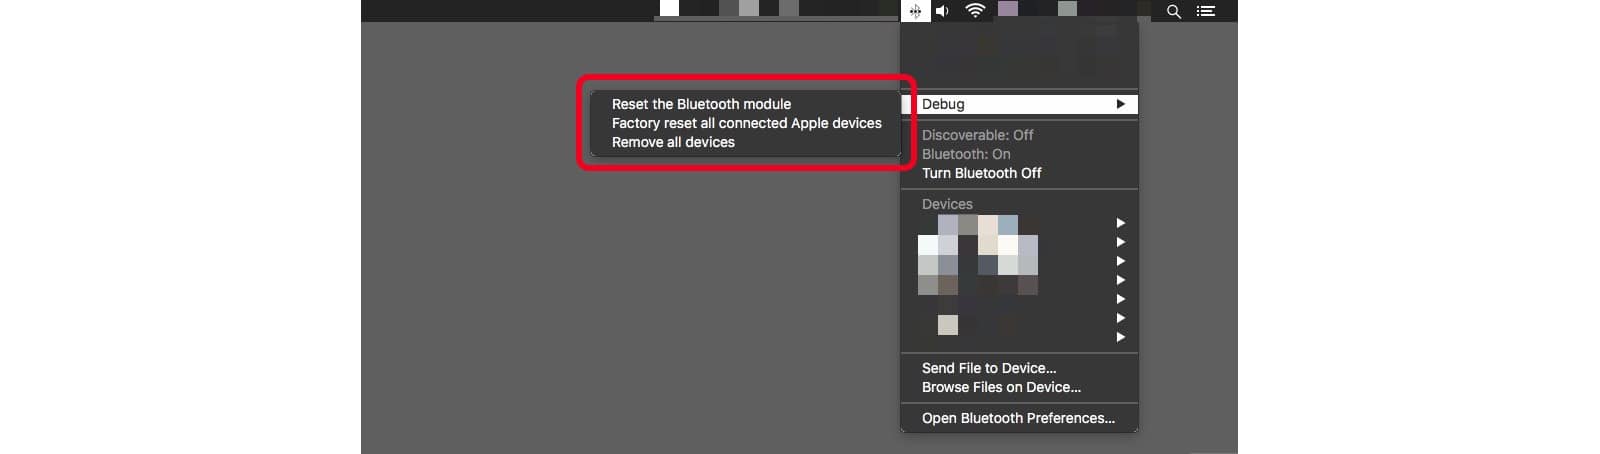 Скрытое меню Bluetooth отладки Mac поможет вам устранить проблемы с Bluetooth.